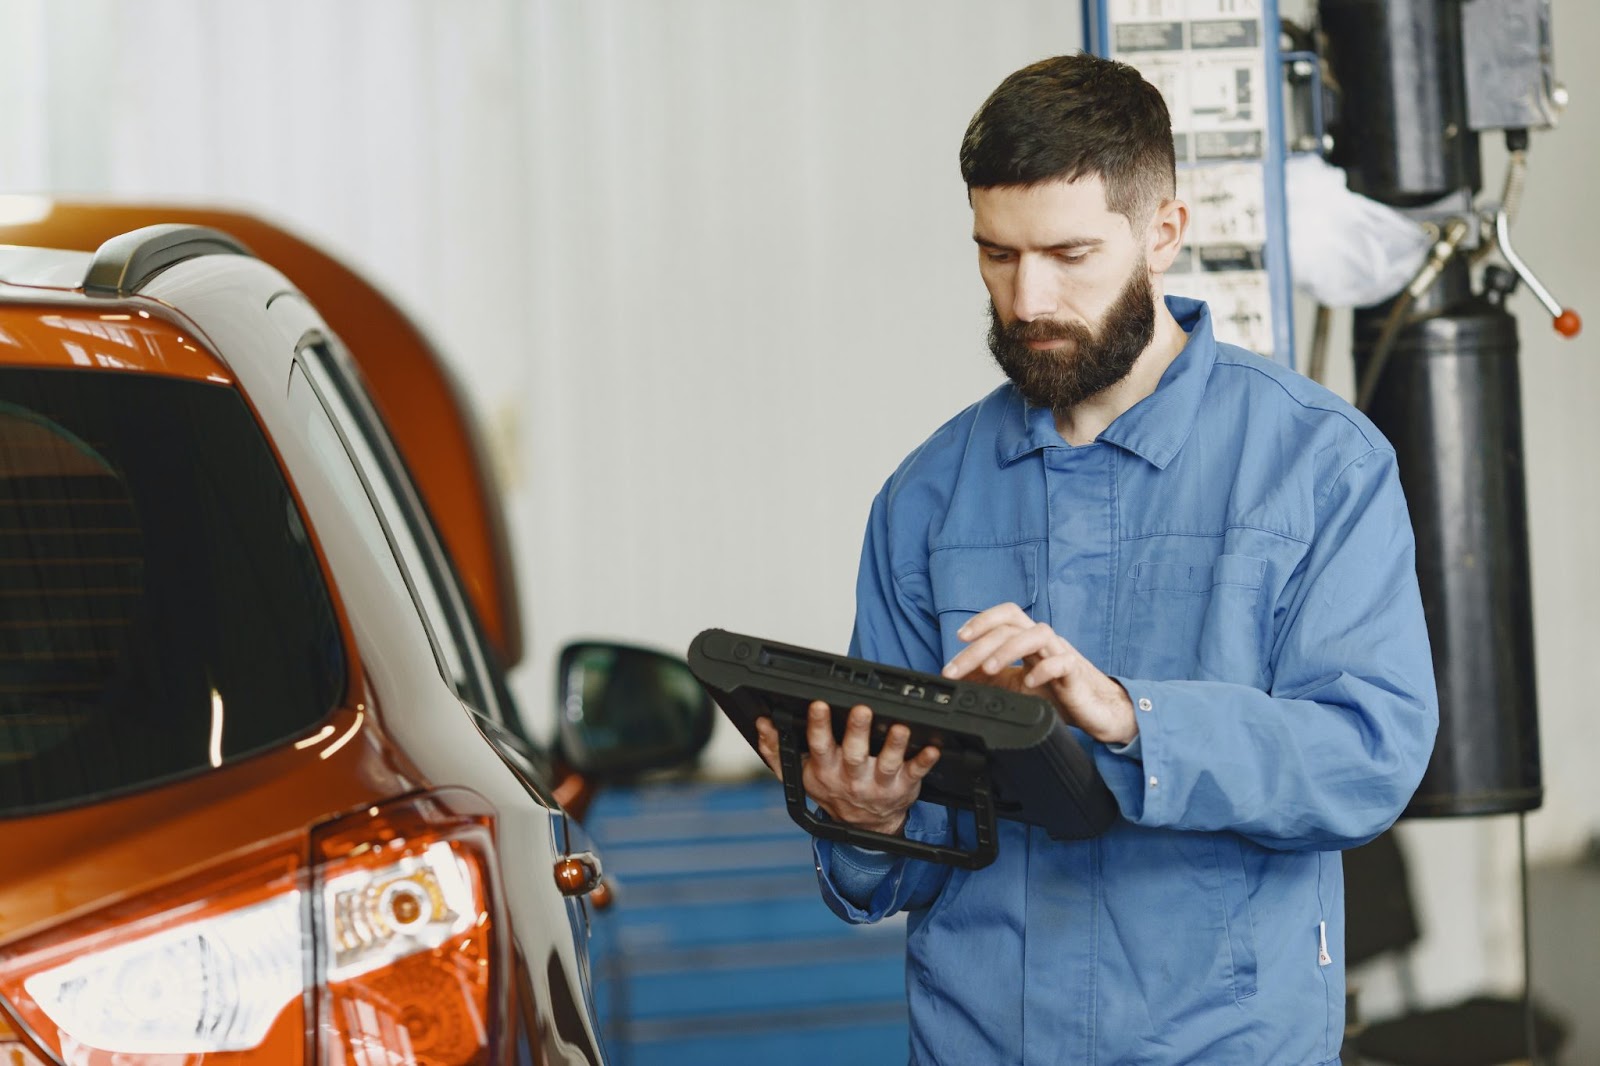 memphis vehicle inspection services central auto repair